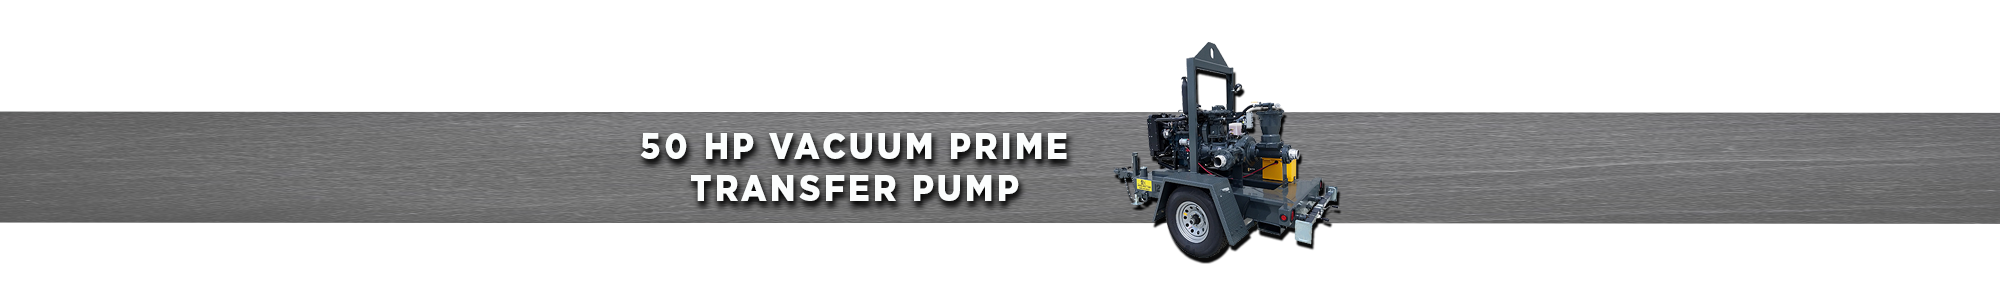 50 HP Vacuum Prime transfer pump